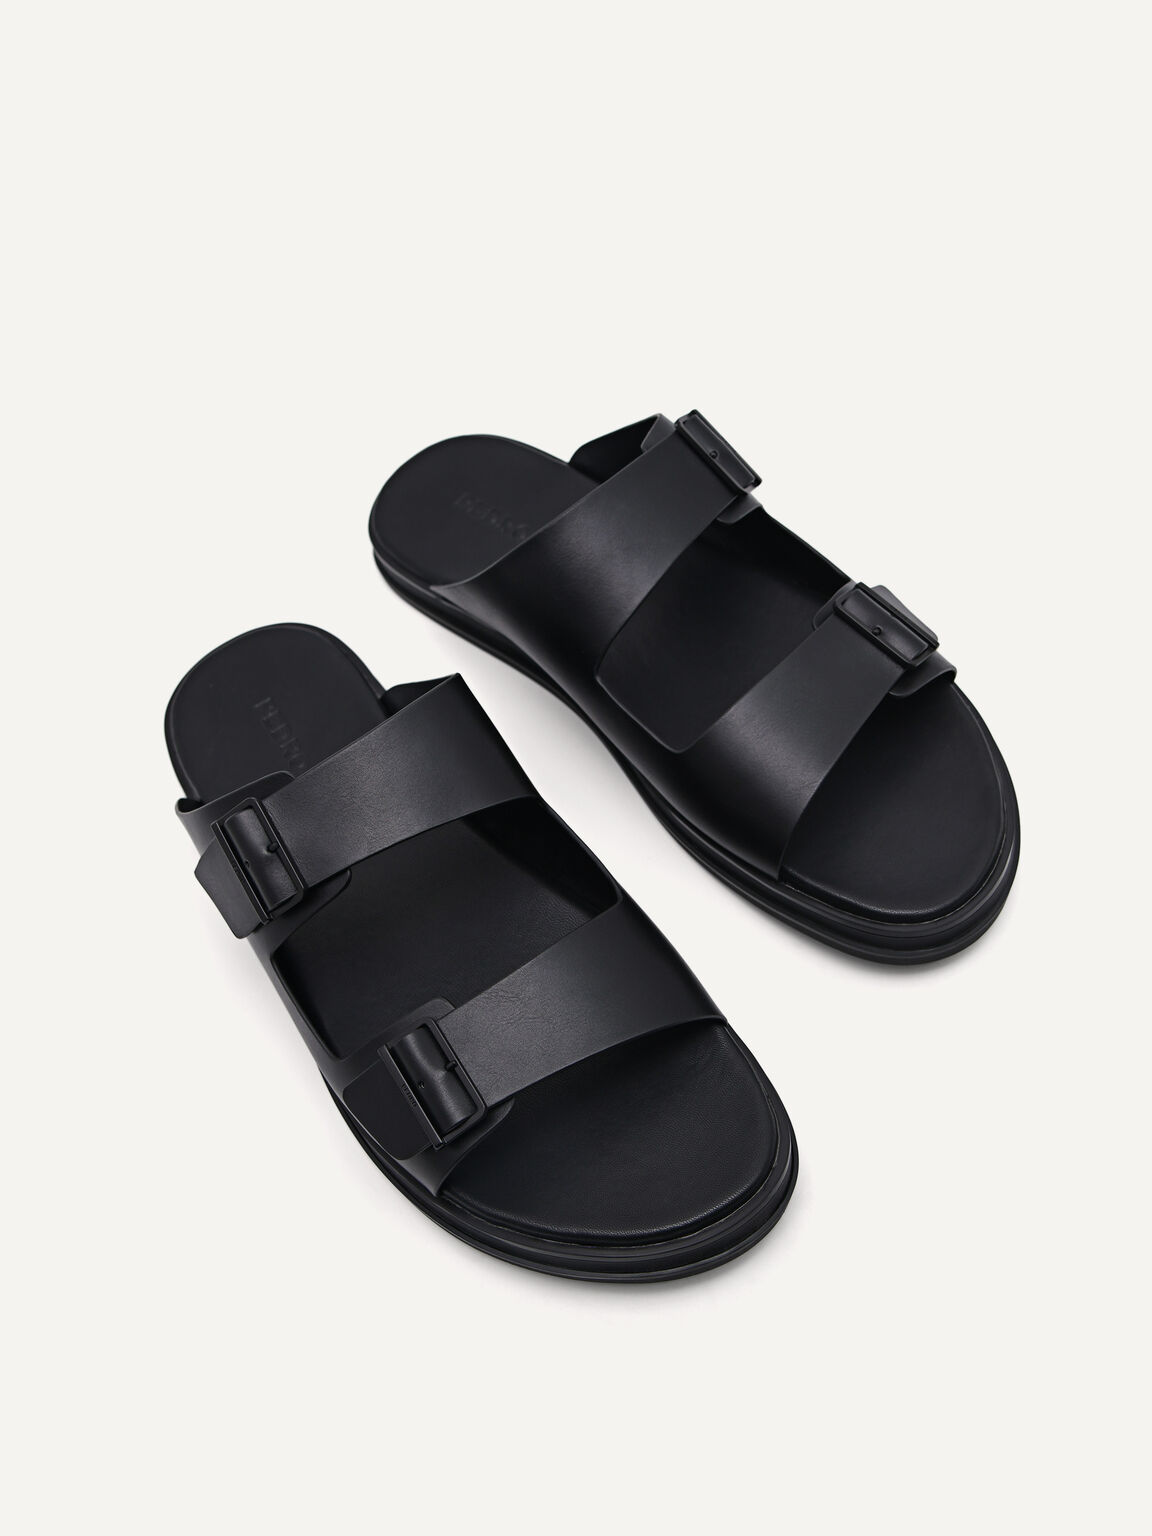 Monochrome Double Strap Slide Sandals, Black